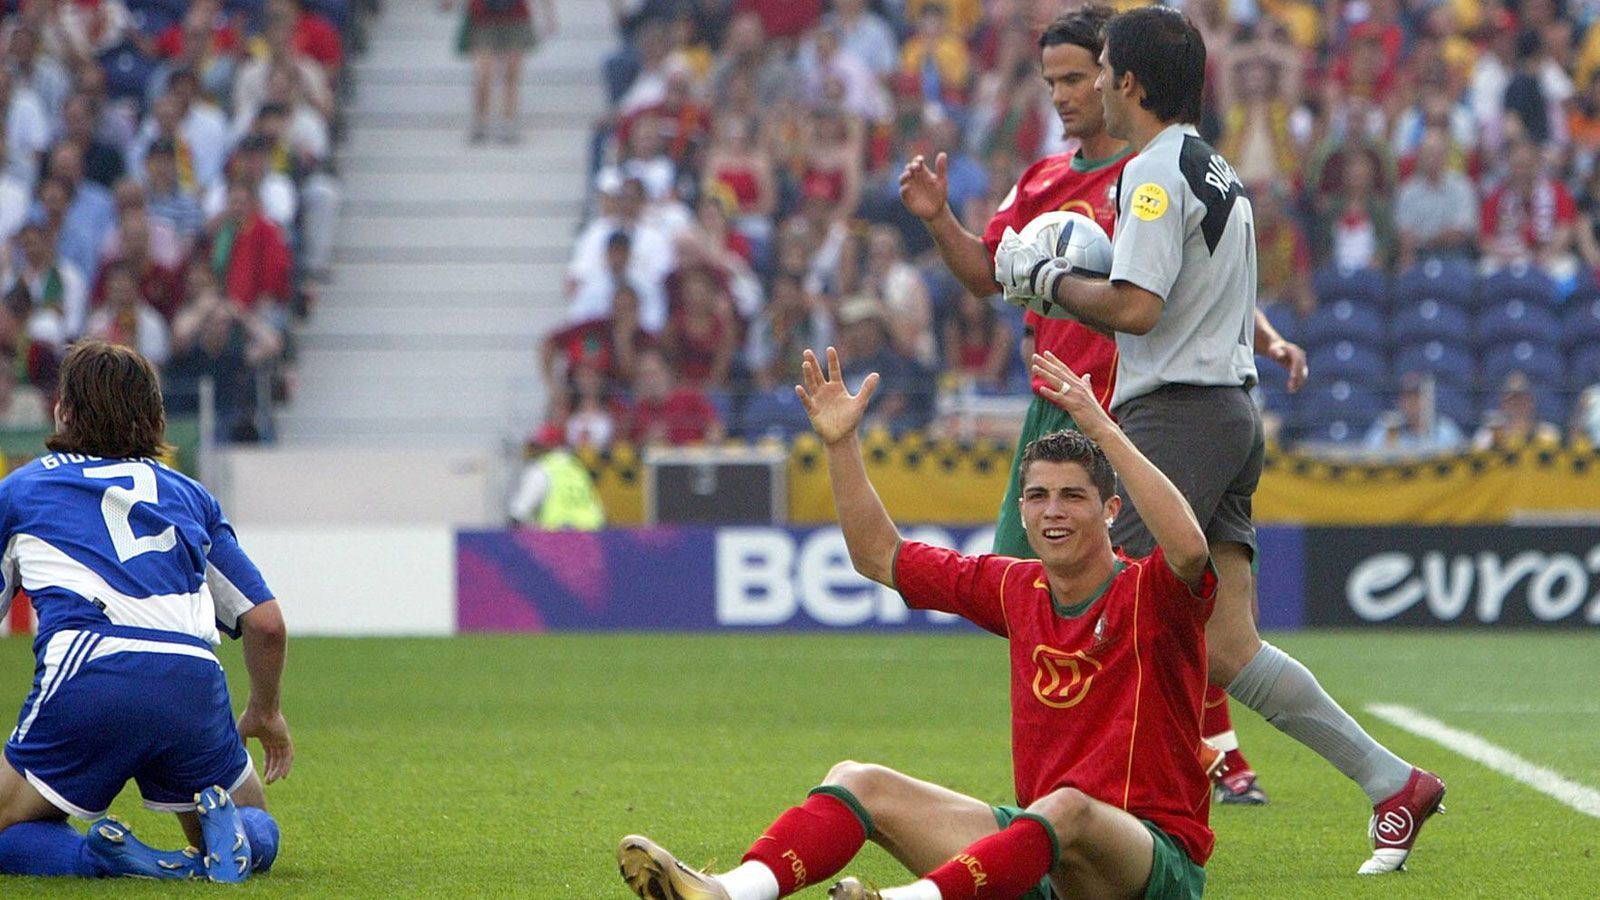 
                <strong>EM 2004: Portugal - Griechenland 1:2</strong><br>
                Im Auftaktspiel 2004 schockte der spätere Überraschungssieger aus Griechenland die favorisierten Portugiesen. Bei den Iberern wurde zur zweiten Hälfte ein gewisser Cristiano Ronaldo eingewechselt, doch auch der mittlerweile fünfmalige Weltfußballer konnte mit seinem späten Anschlusstreffer die 1:2-Niederlage nicht verhindern. Übrigens: Dieselben Teams standen sich auch im EM-Finale gegenüber - auch dort triumphierte der deutsche Trainer Otto Rehhagel mit seinen Griechen und sorgte für die größte EM-Sensation der Geschichte.
              